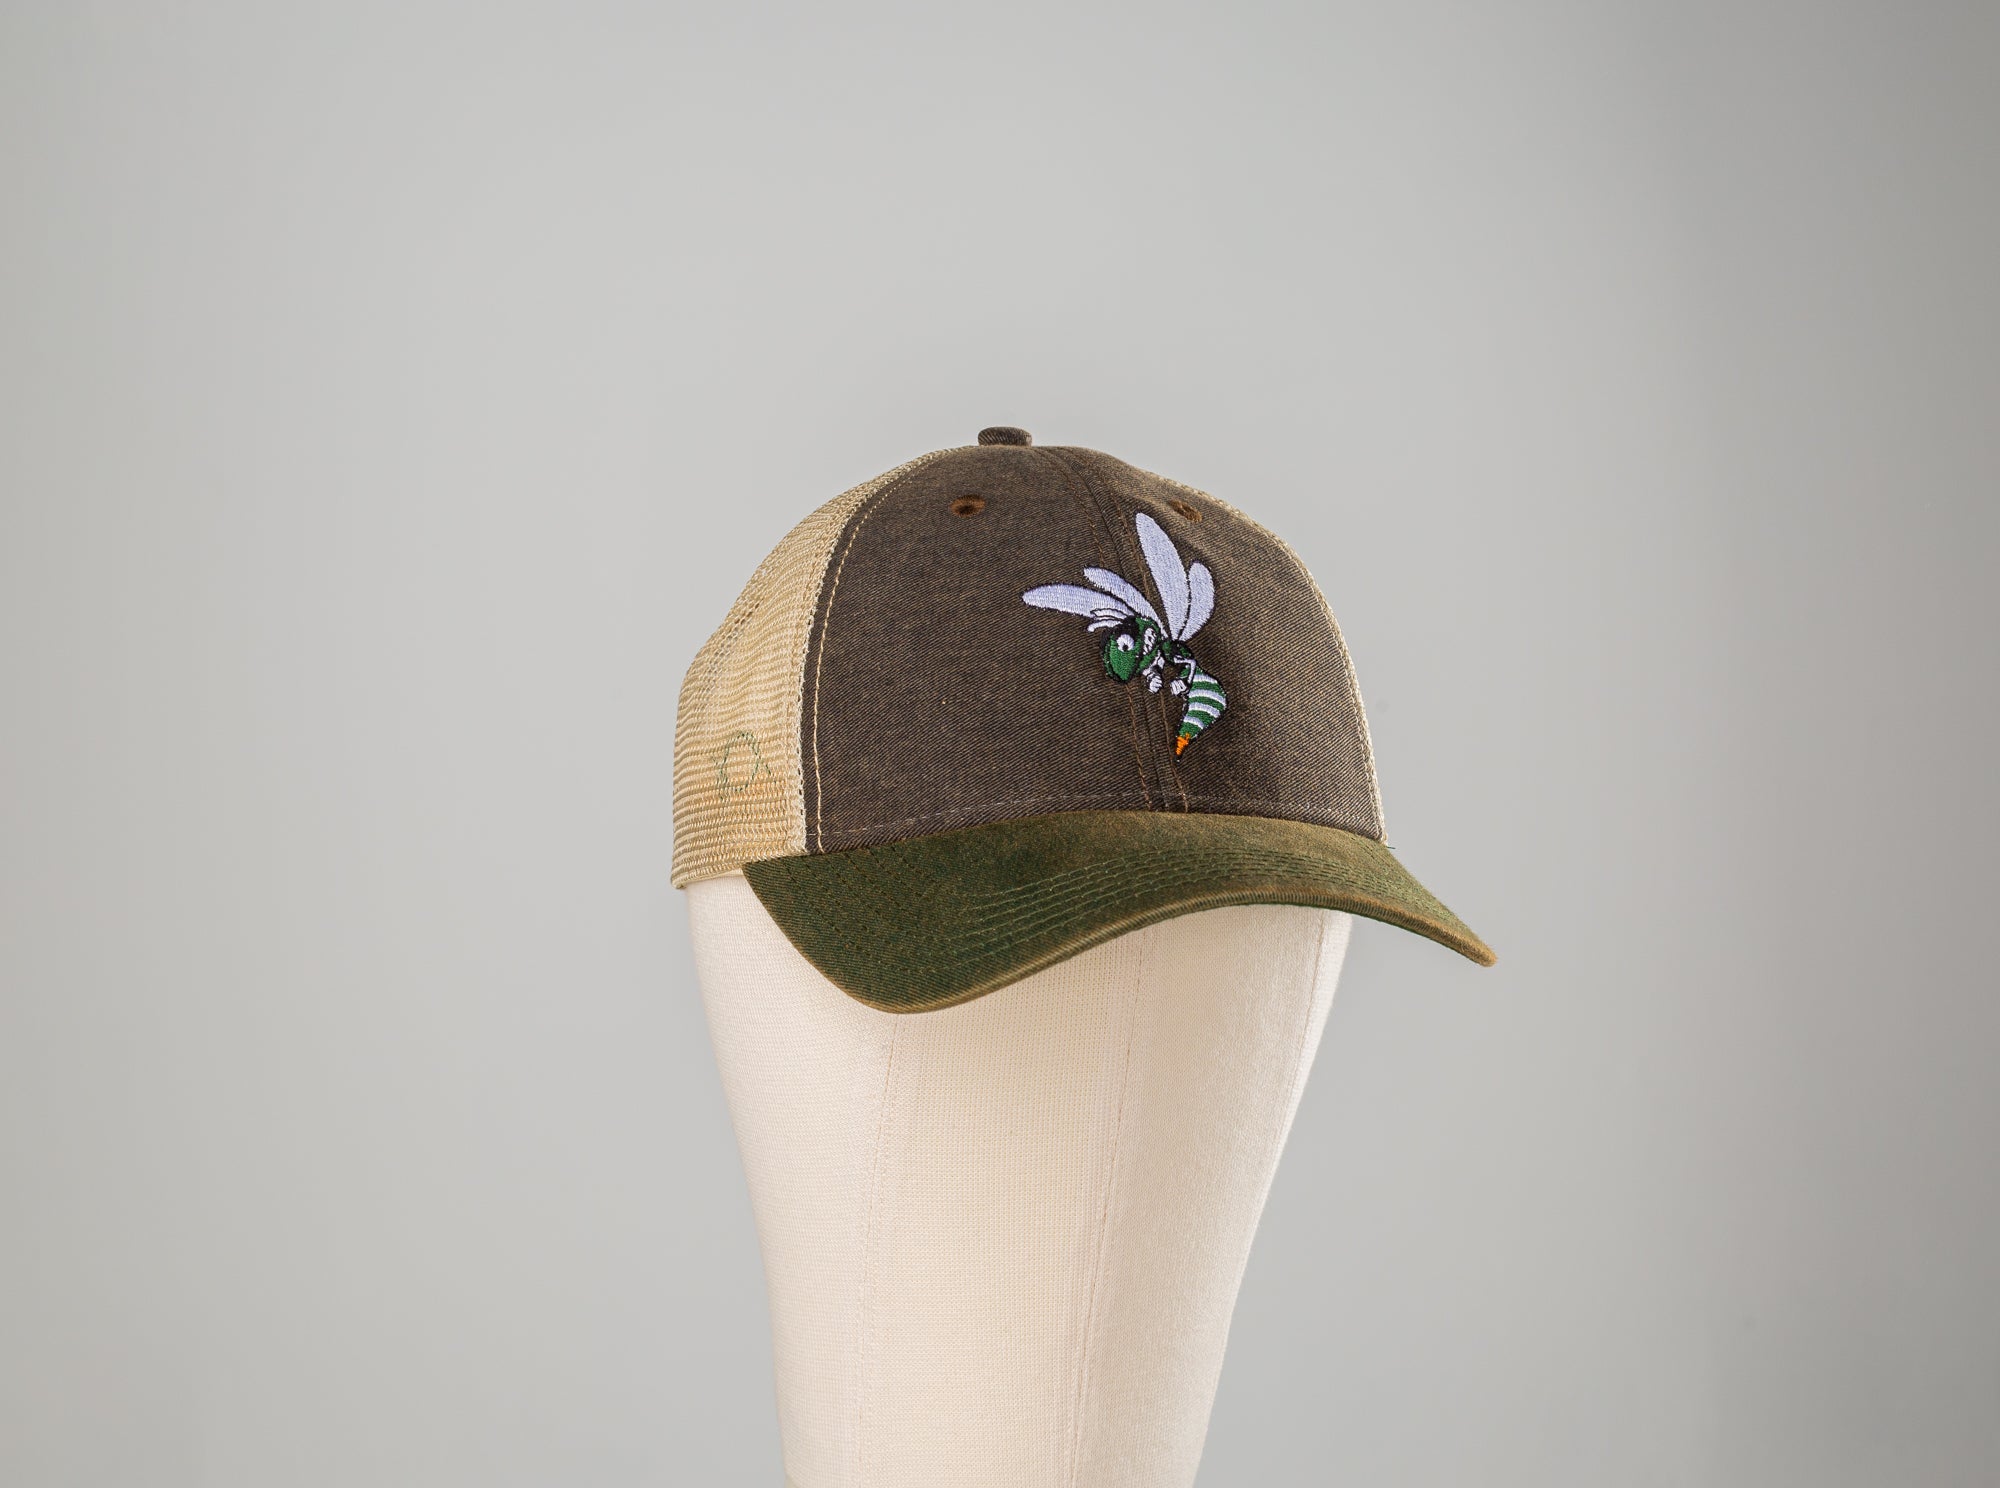 Hornet Embroidered Hat - Black Cross Mesh